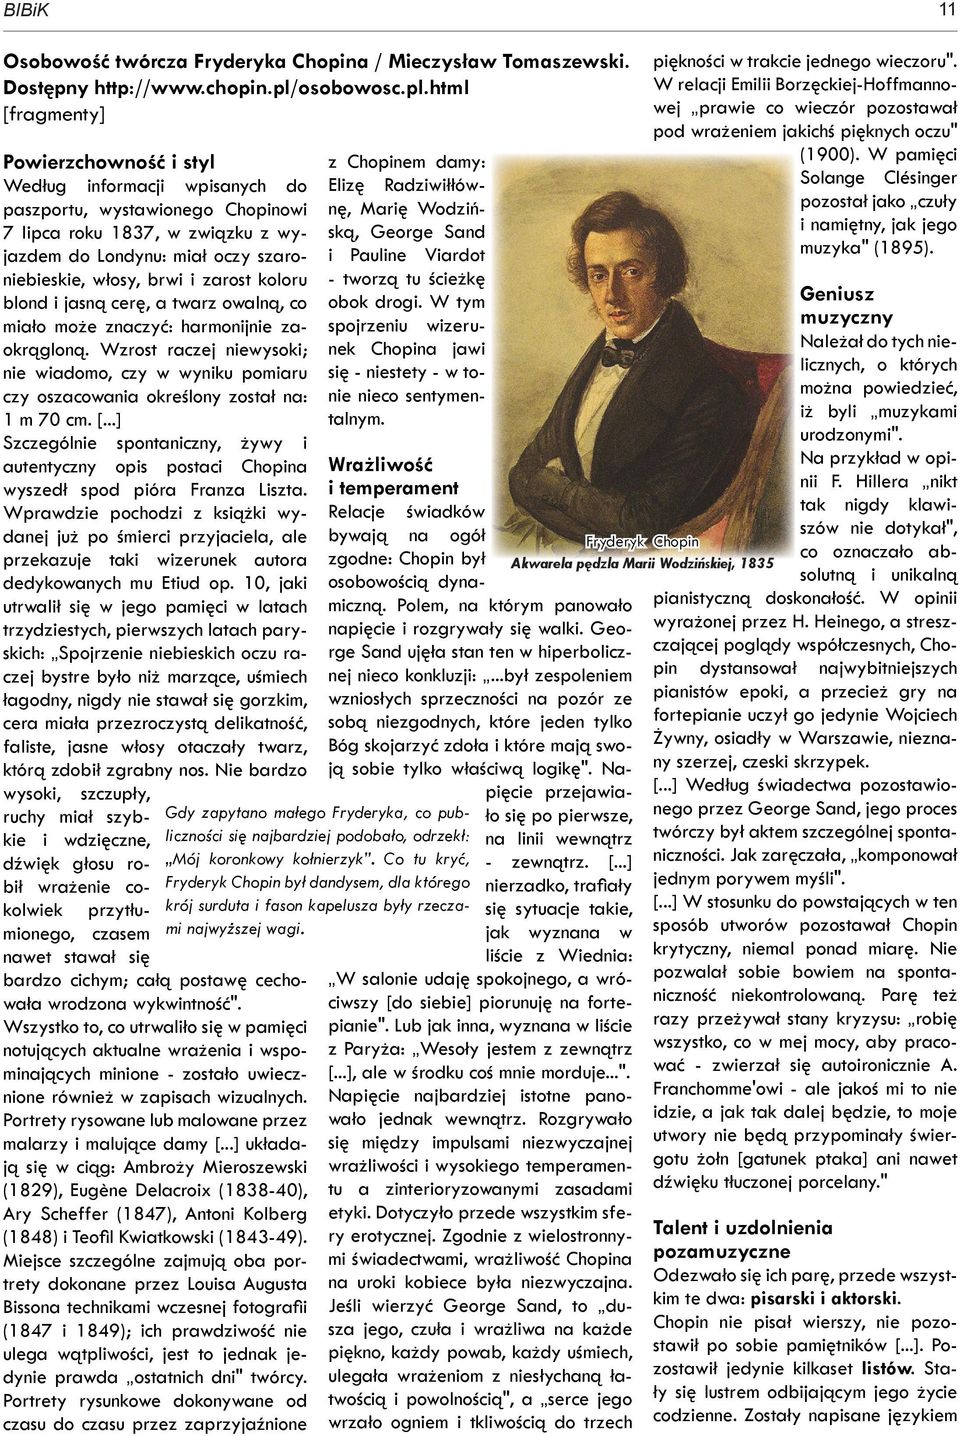 html [fragmenty] Powierzchowność i styl Według informacji wpisanych do paszportu, wystawionego Chopinowi 7 lipca roku 1837, w związku z wyjazdem do Londynu: miał oczy szaroniebieskie, włosy, brwi i